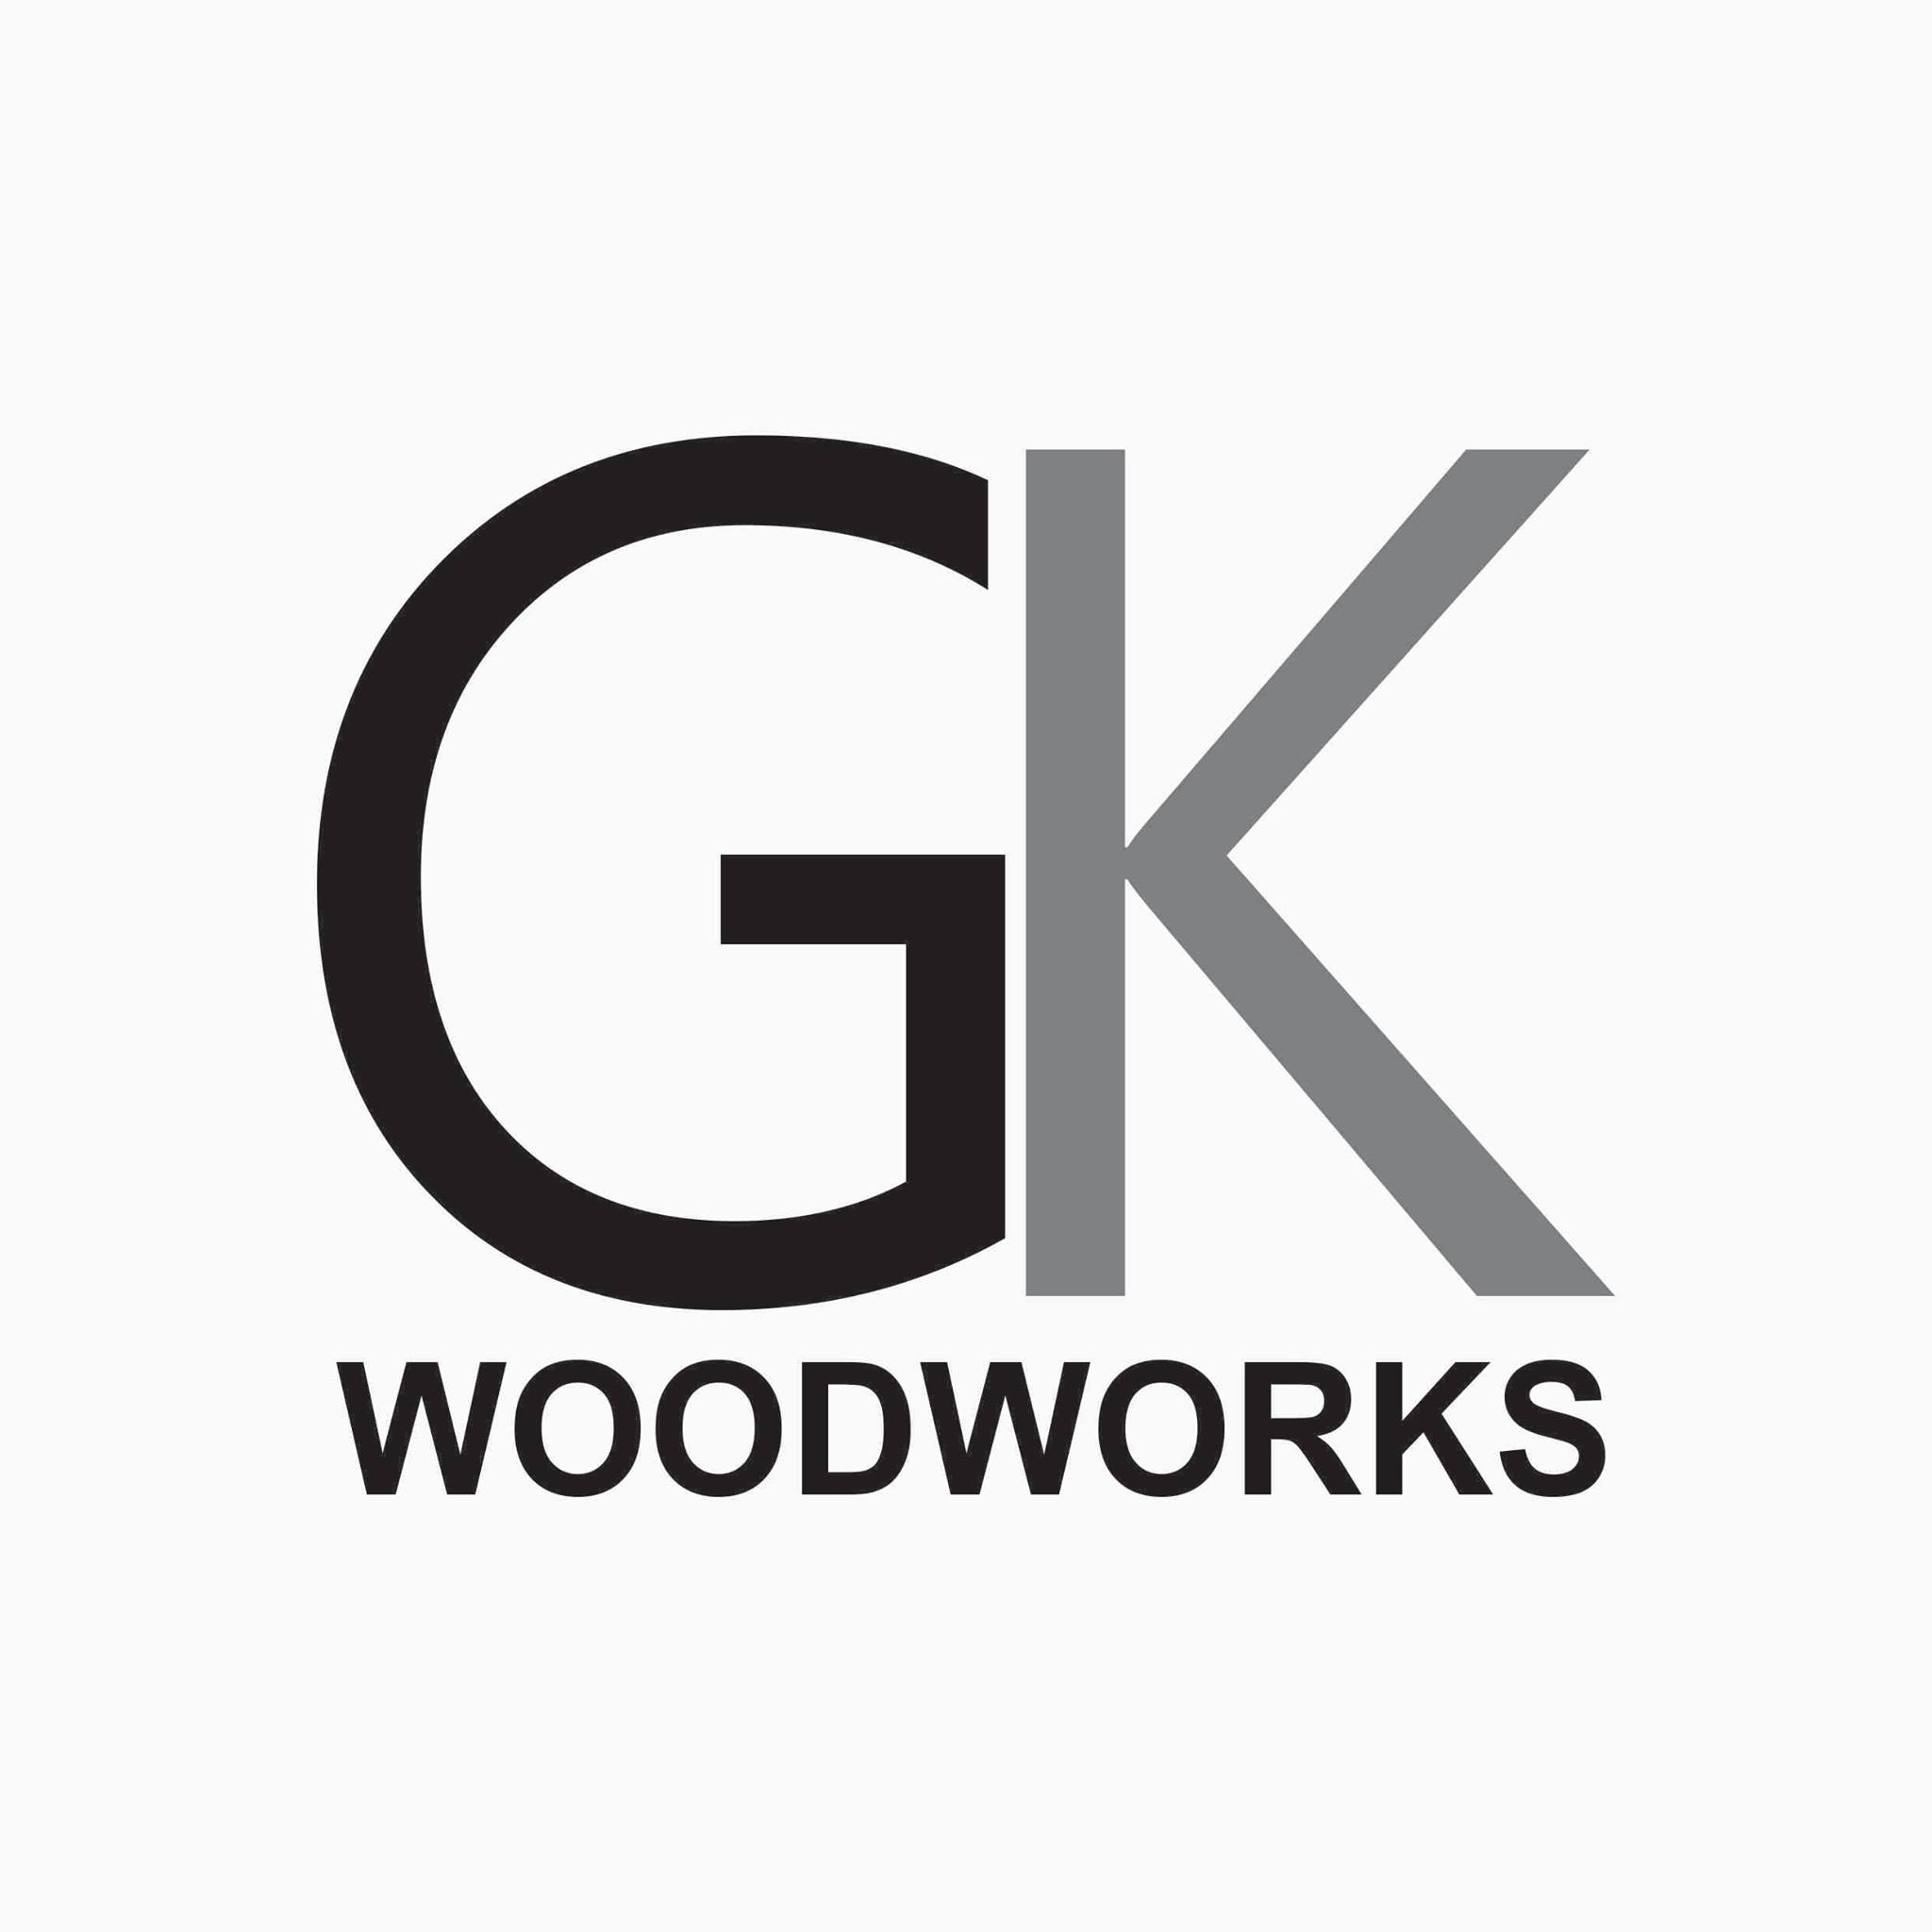 GK Woodworks